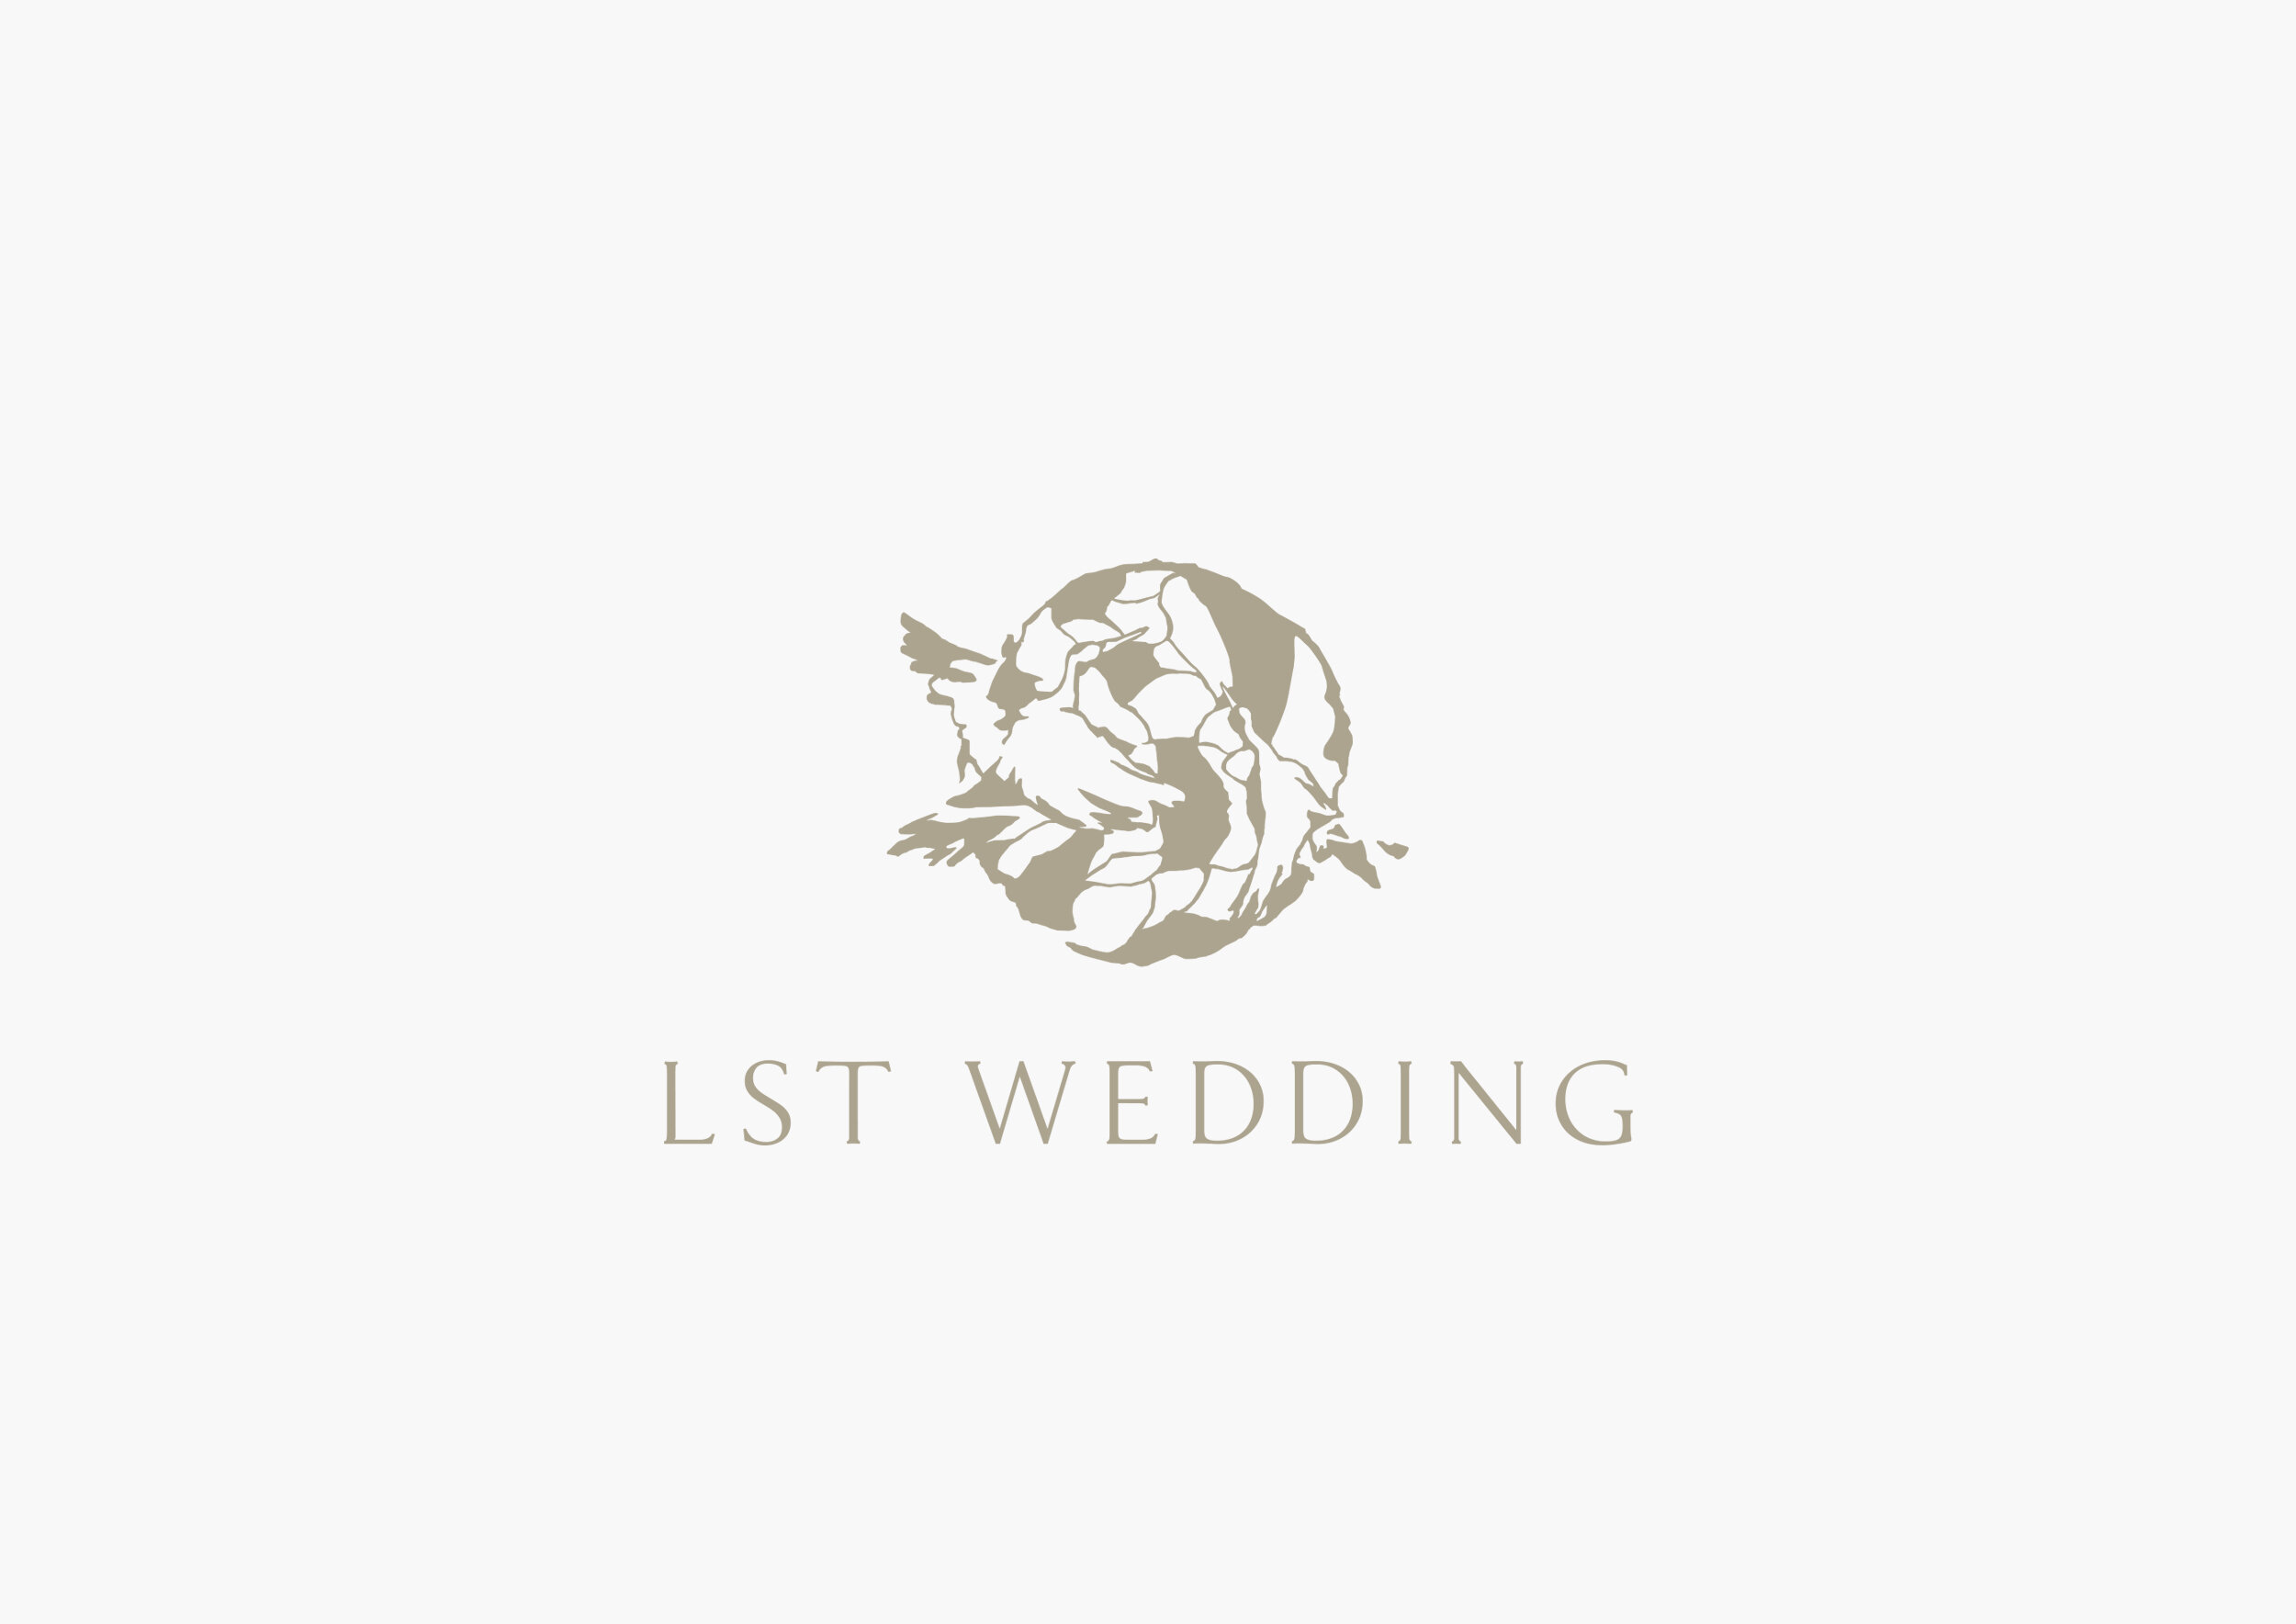 LST_logo.jpg